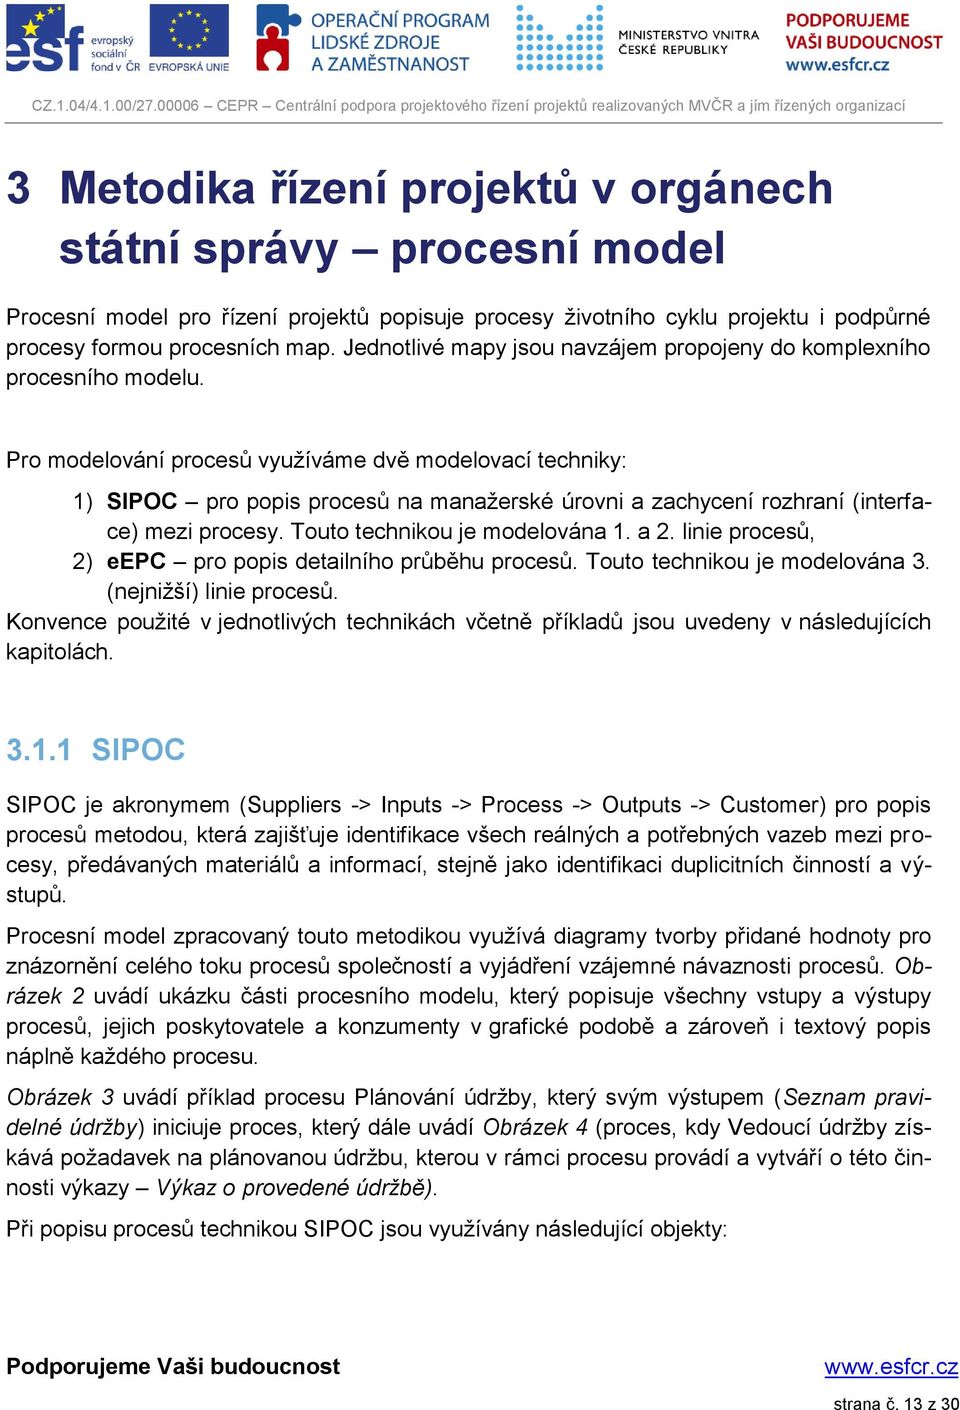 Pro modelování procesů využíváme dvě modelovací techniky: 1) SIPOC pro popis procesů na manažerské úrovni a zachycení rozhraní (interface) mezi procesy. Touto technikou je modelována 1. a 2.